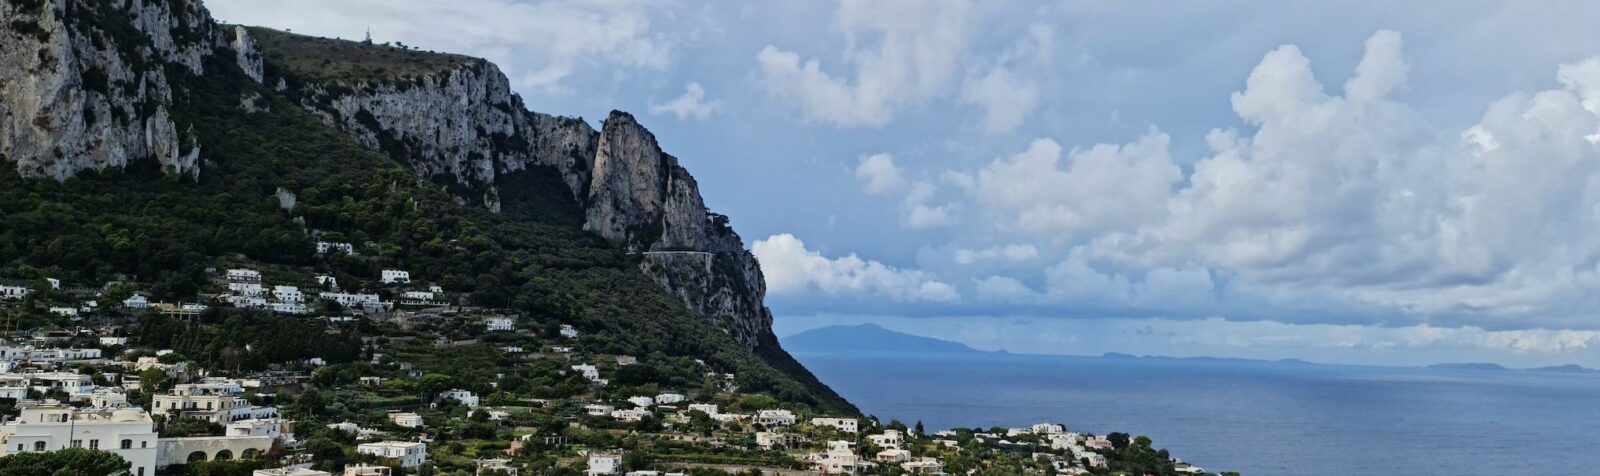 Elopement-in-capri-amalfi-coast